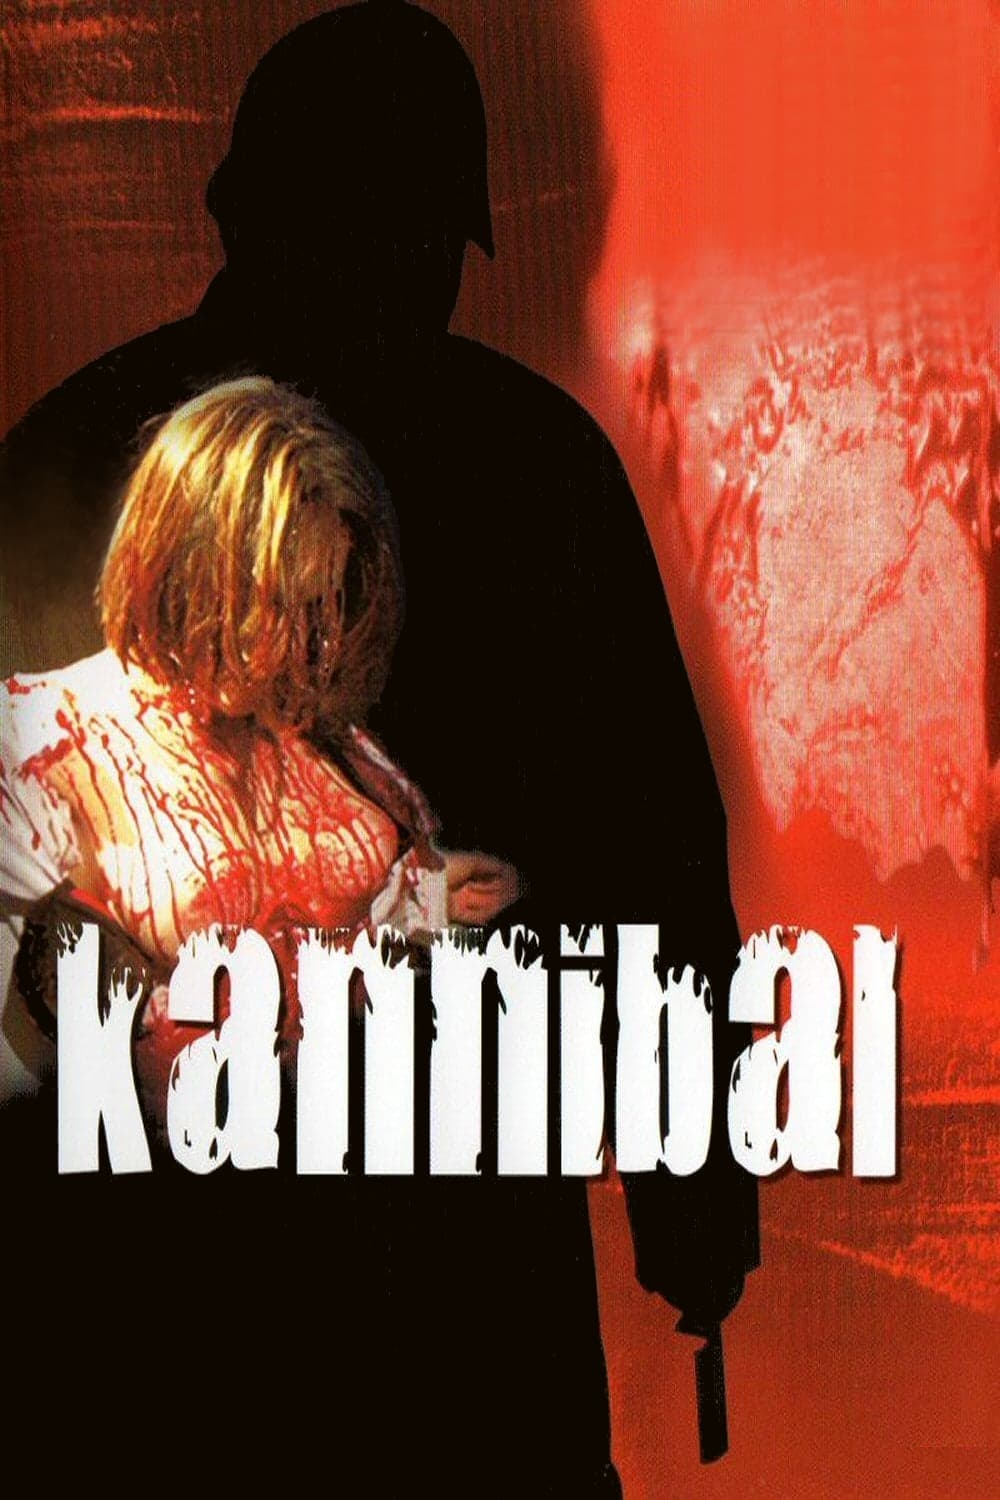 Kannibal (2001)